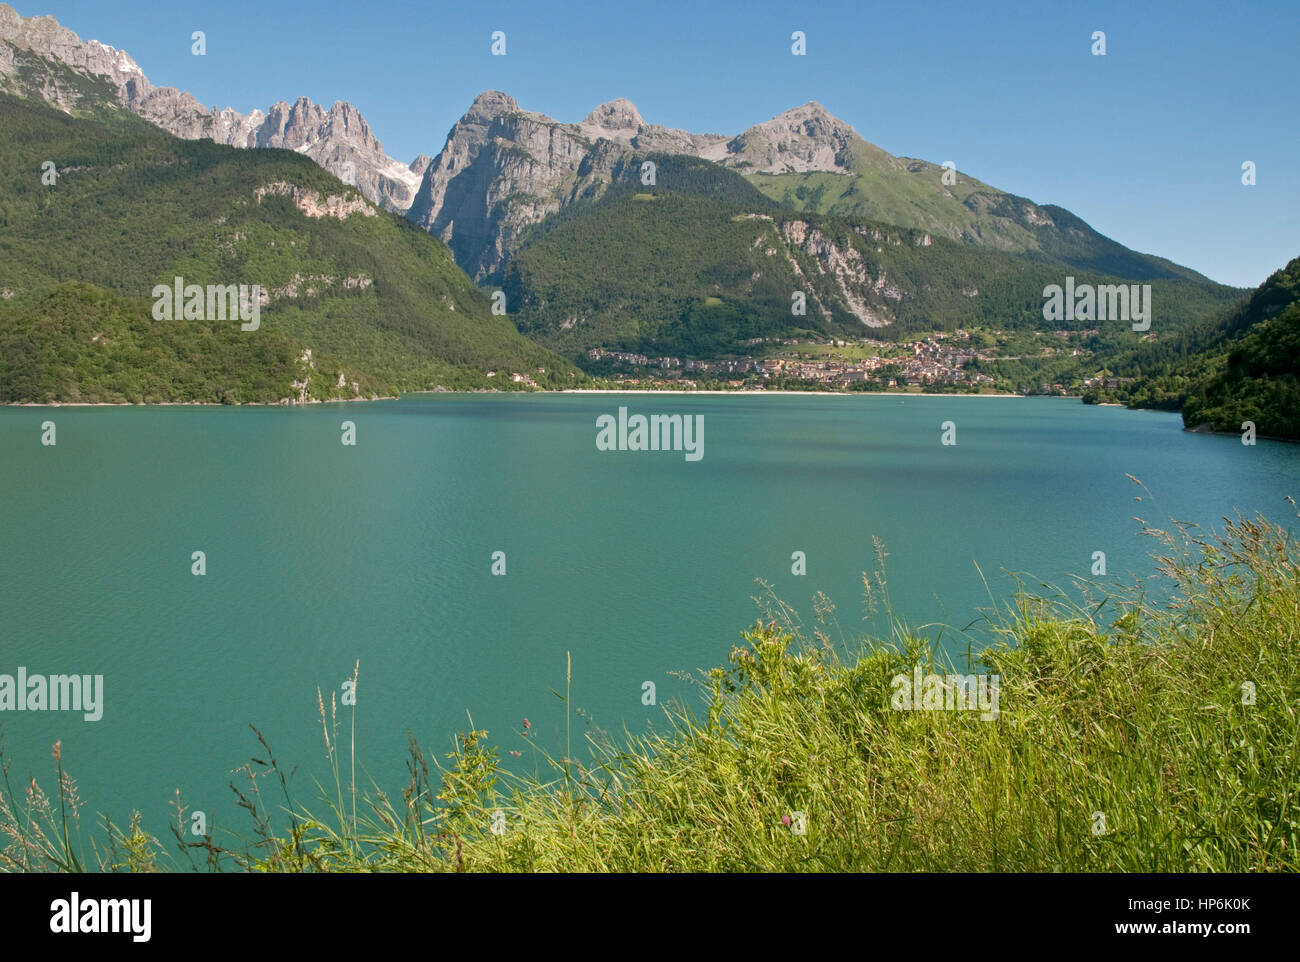 Il lago di Molveno nei pressi di Andalo in Trentino Provincia del nord Italia, con il gruppo delle Dolomiti di Brenta al di là Foto Stock